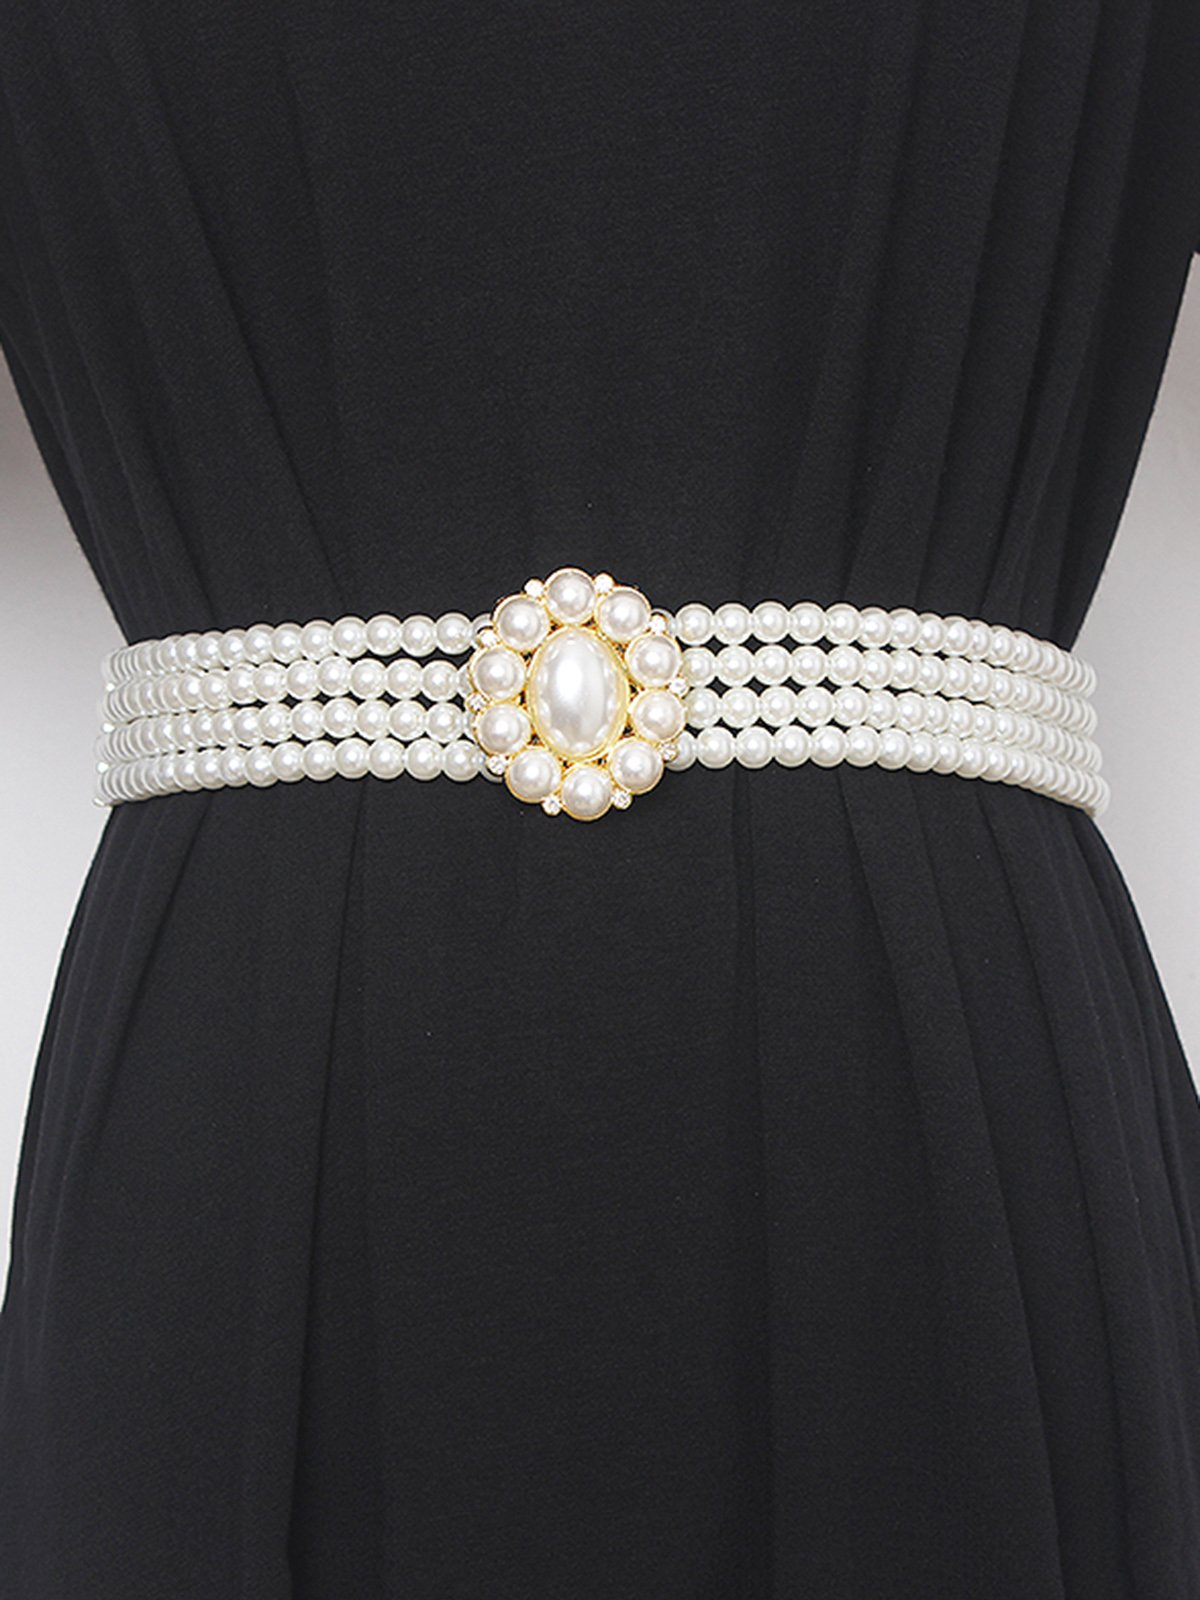 Elegant Strass Blume Nachgemachte Perle Elastisch Bund Kleid Zubehörteil